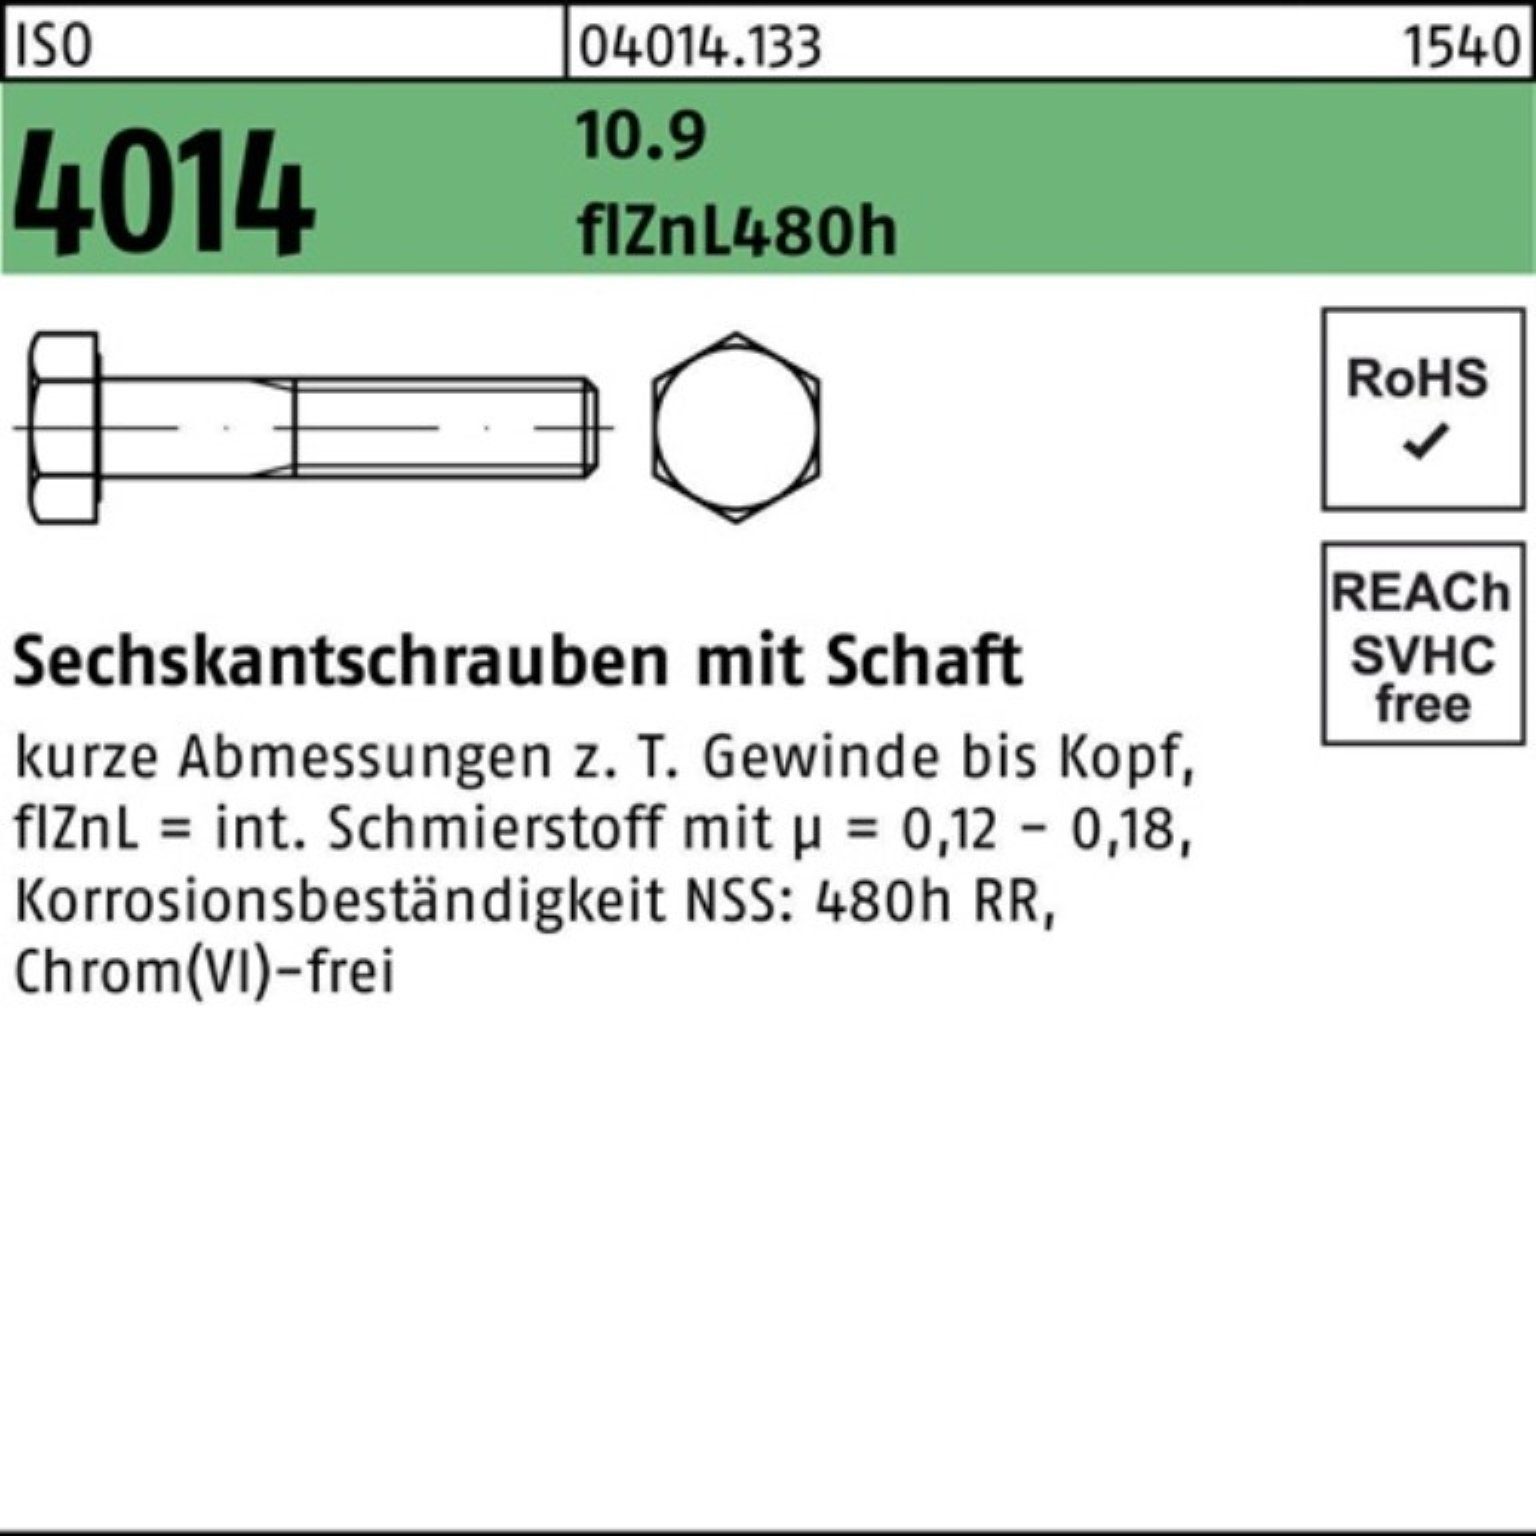 Sechskantschraube 4014 ISO Bufab Schaft Sechskantschraube M20x 10.9 100er zinklamelle Pack 100